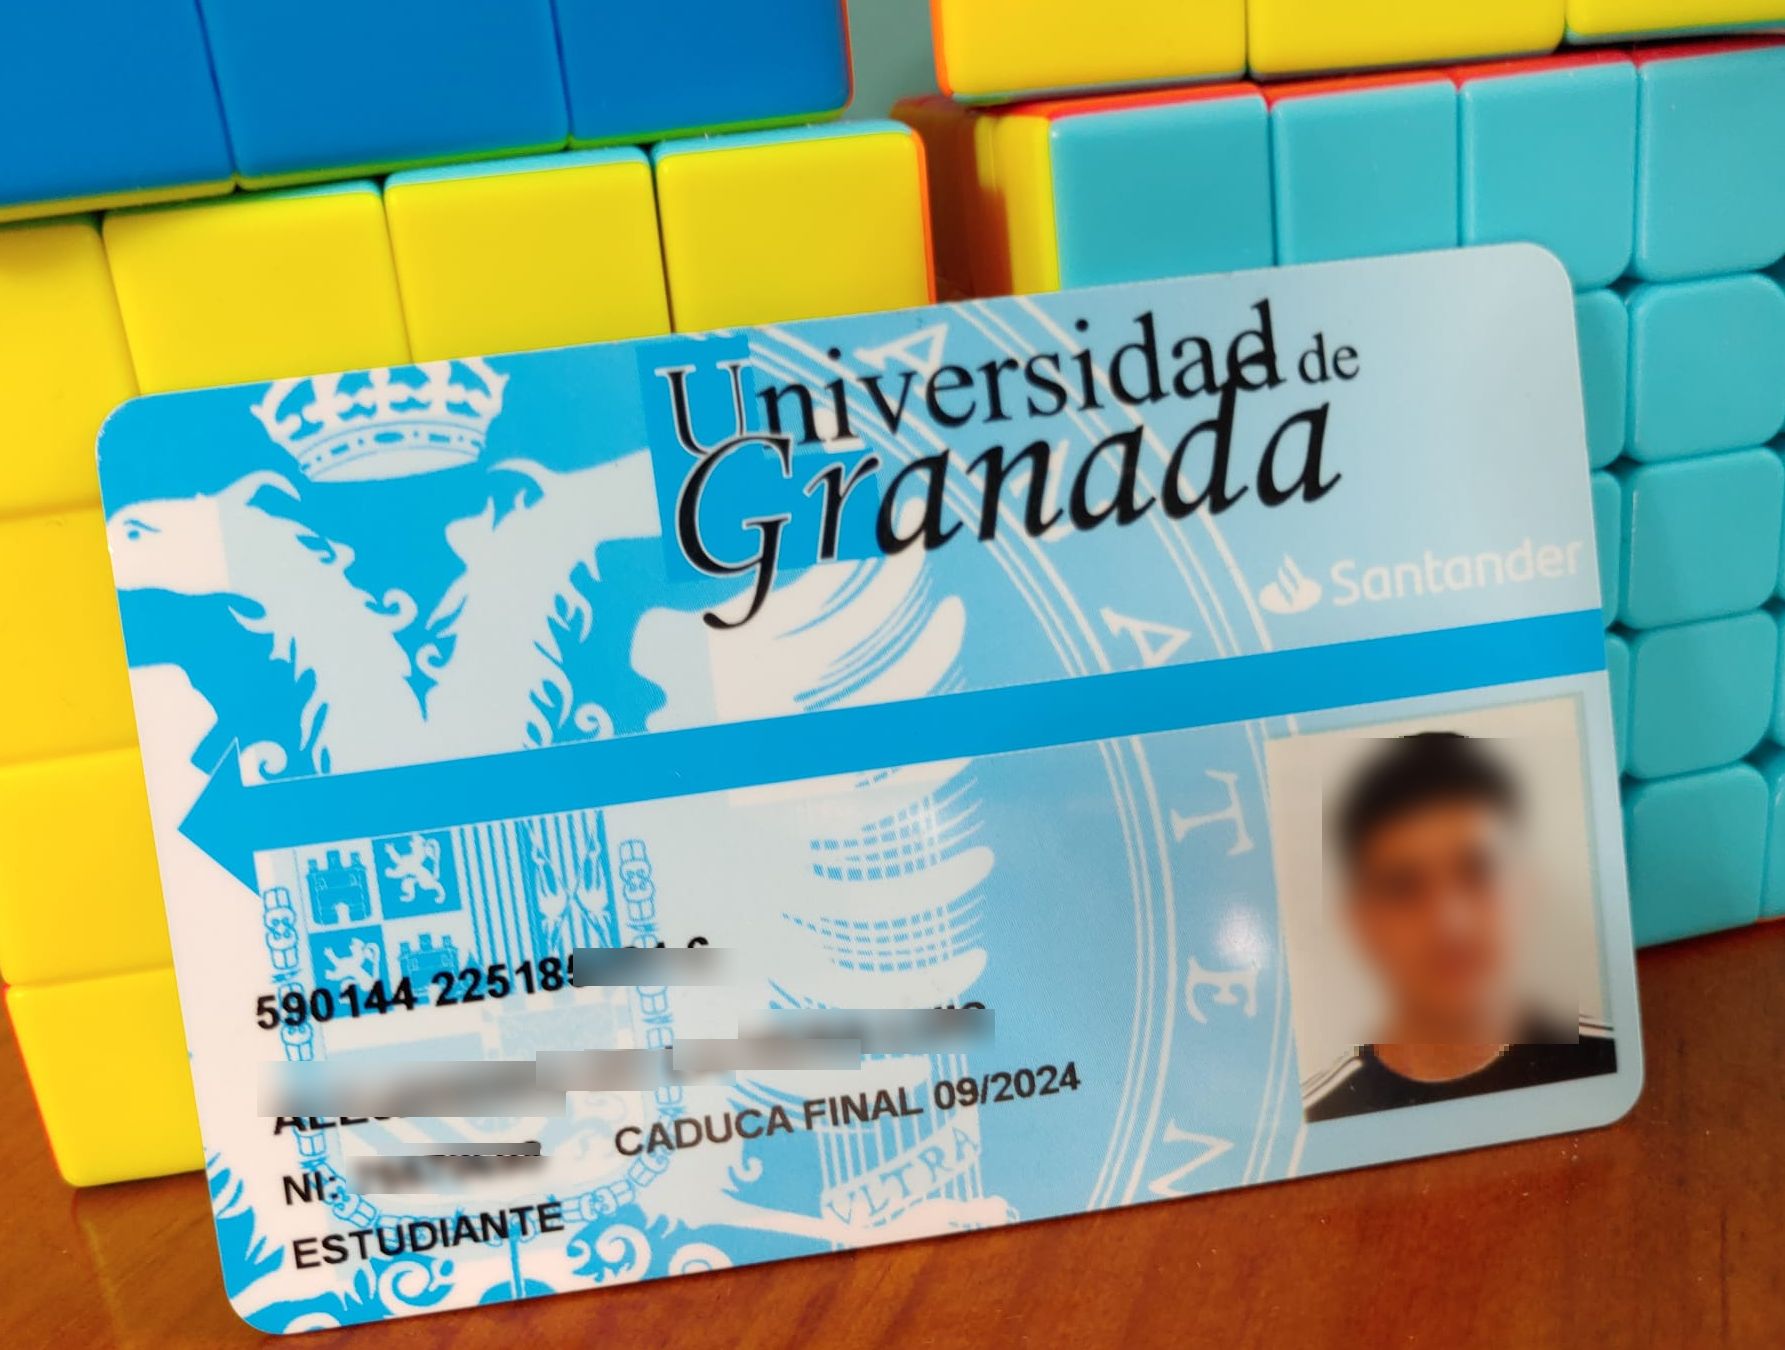 Tarjeta universitaria de la Universidad de Granada